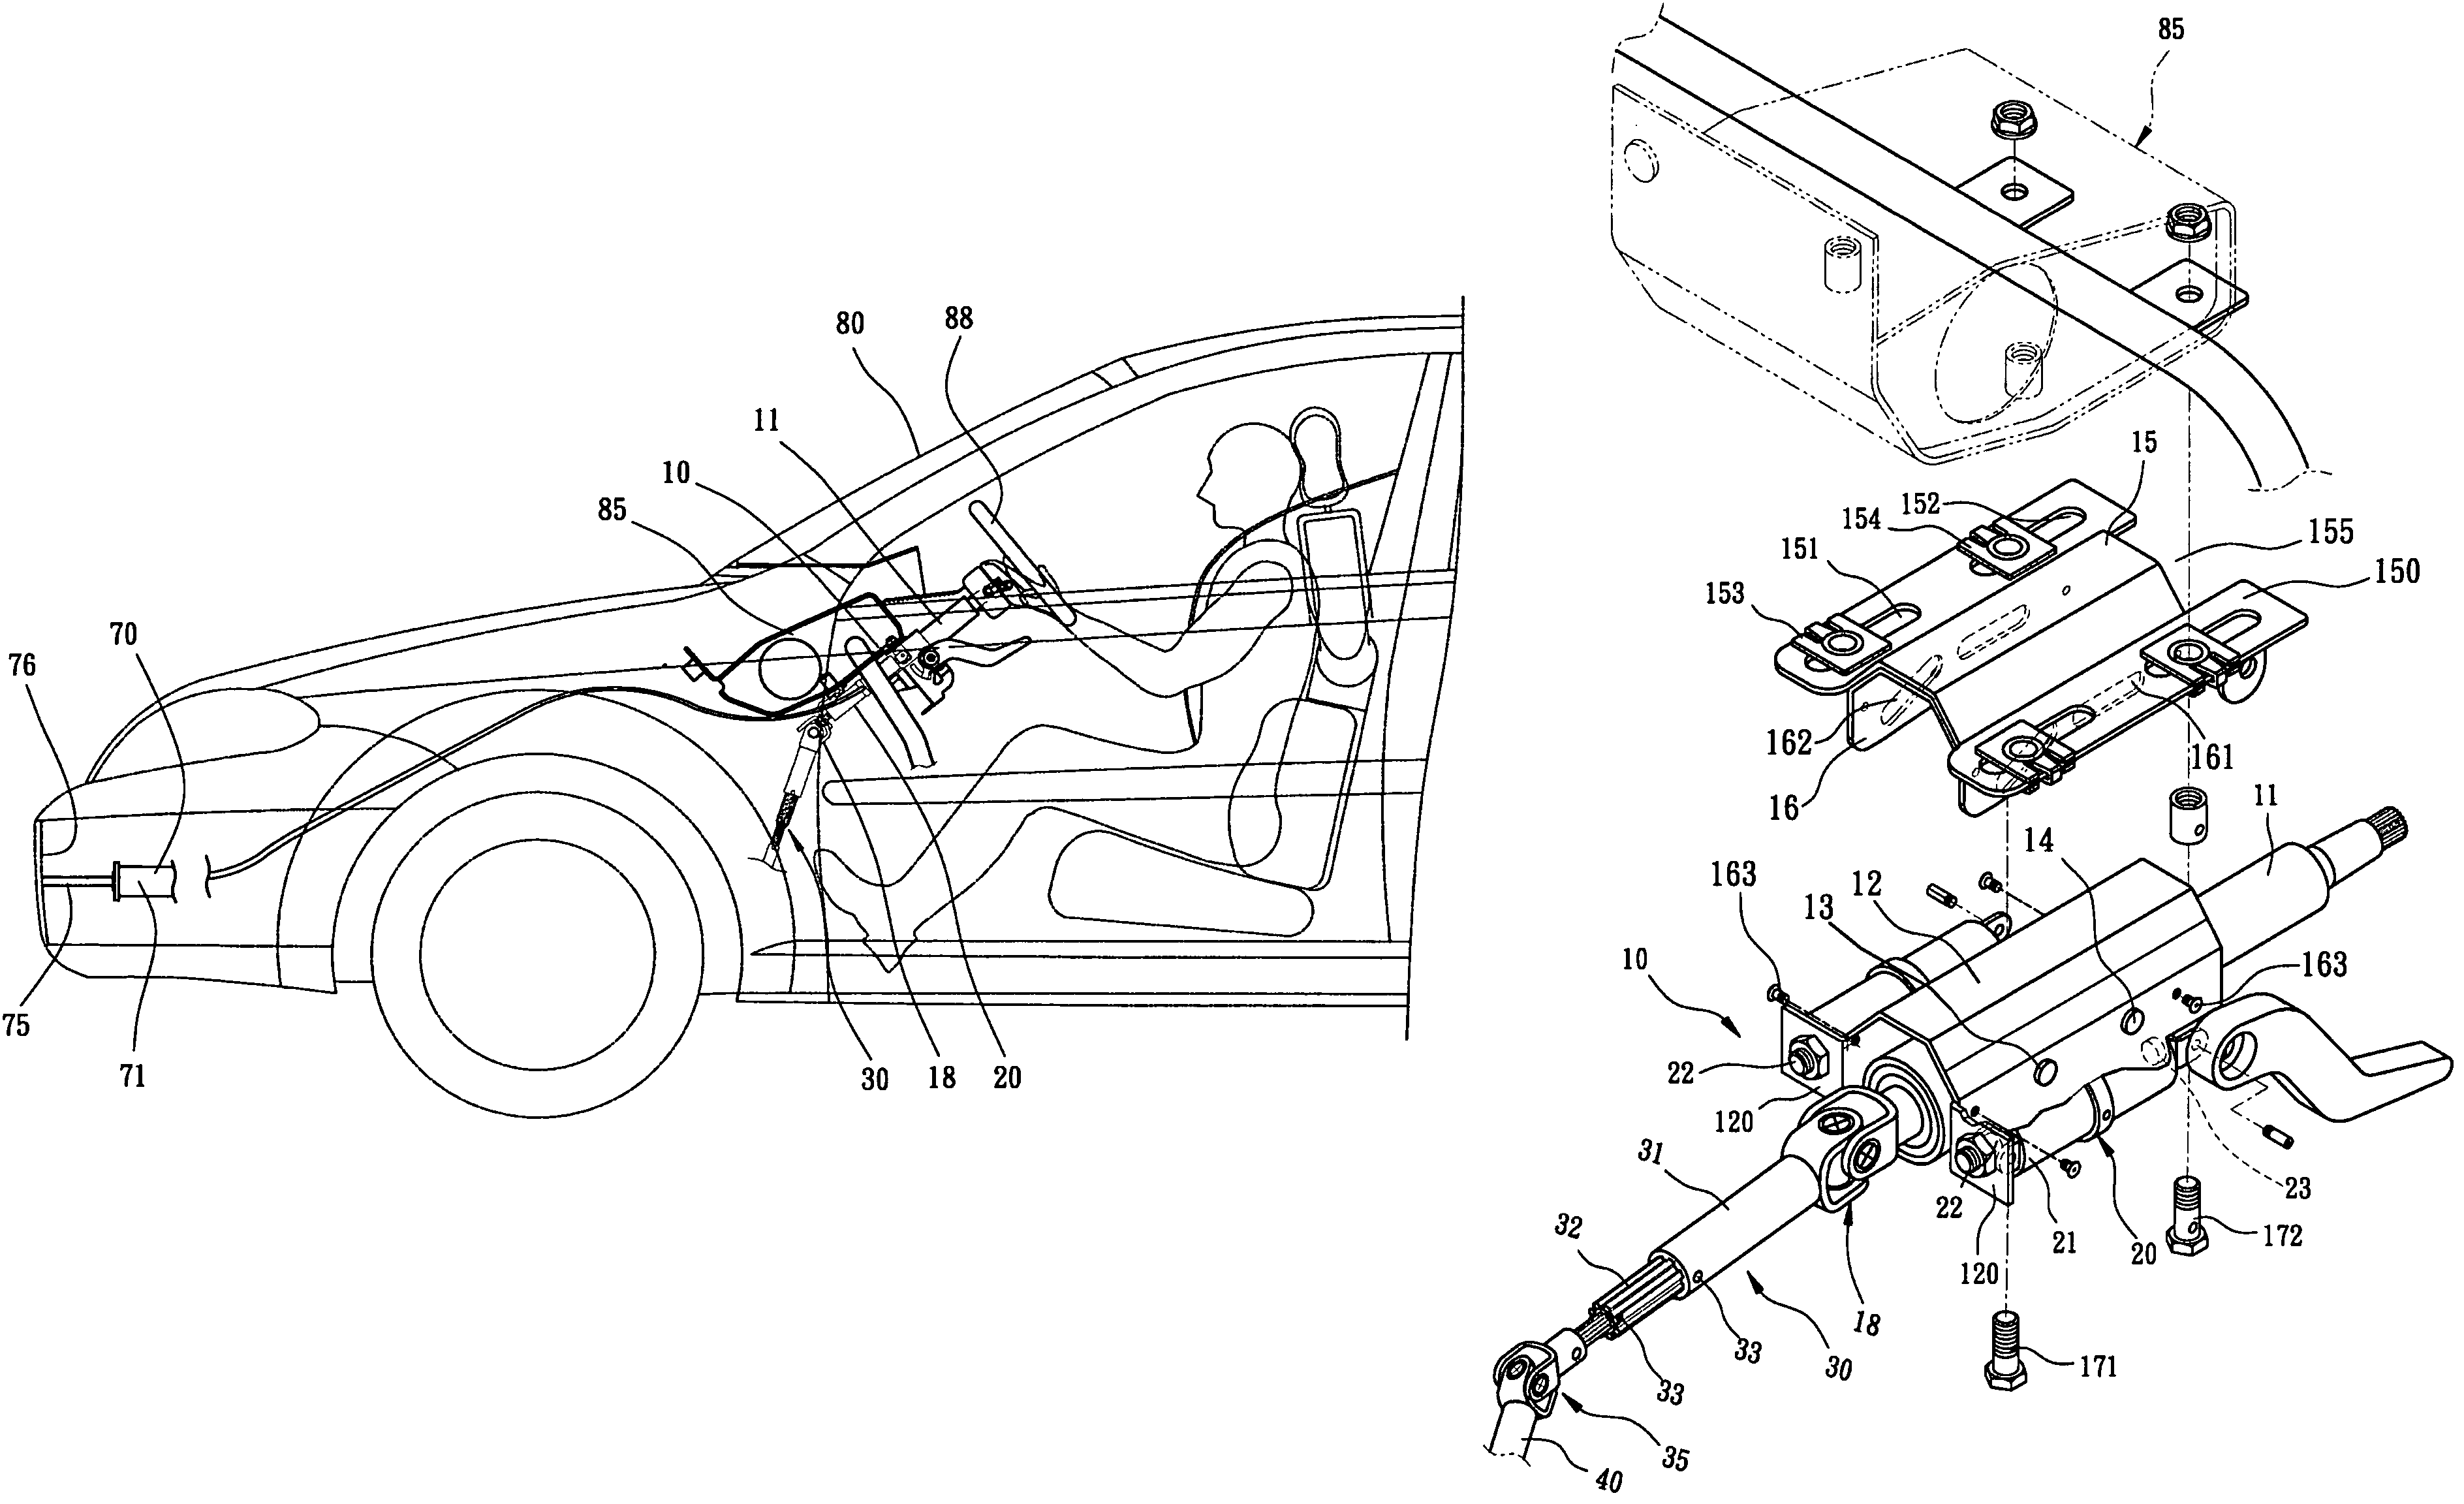 Retractable steering mechanism